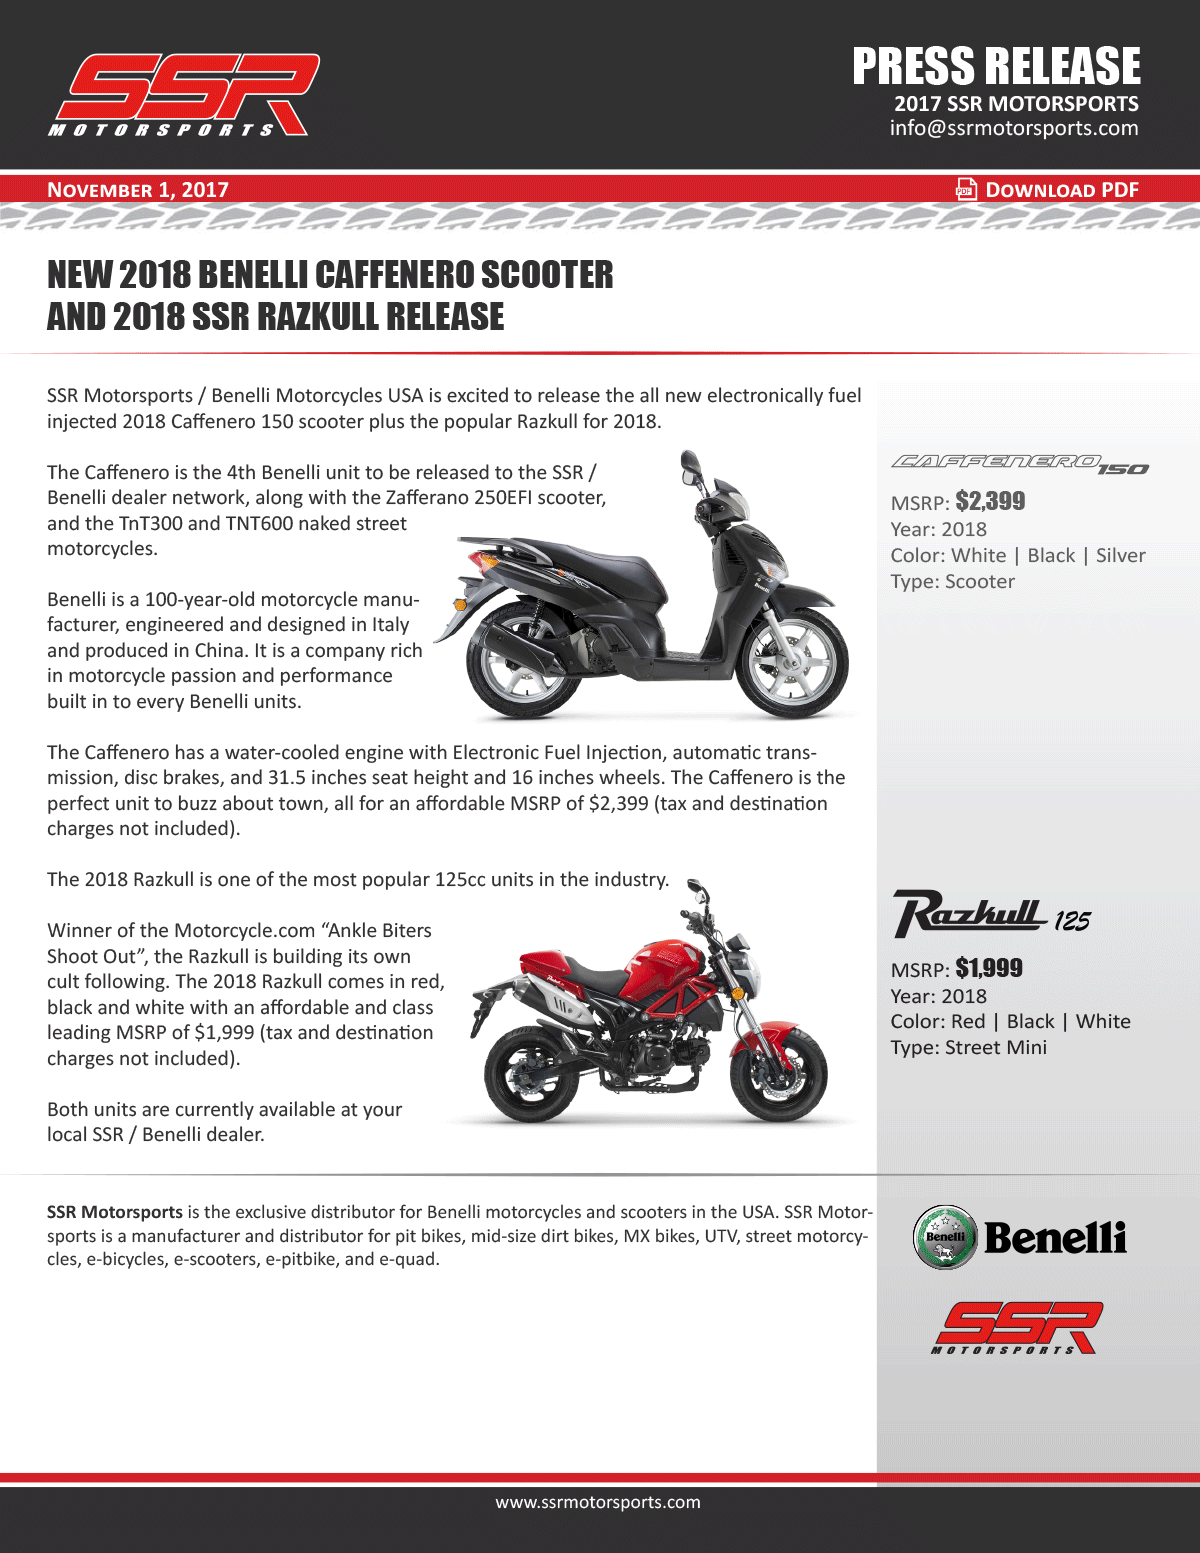 New 2018 Benelli Caffenero Scooter And 2018 SSR Razkull Release